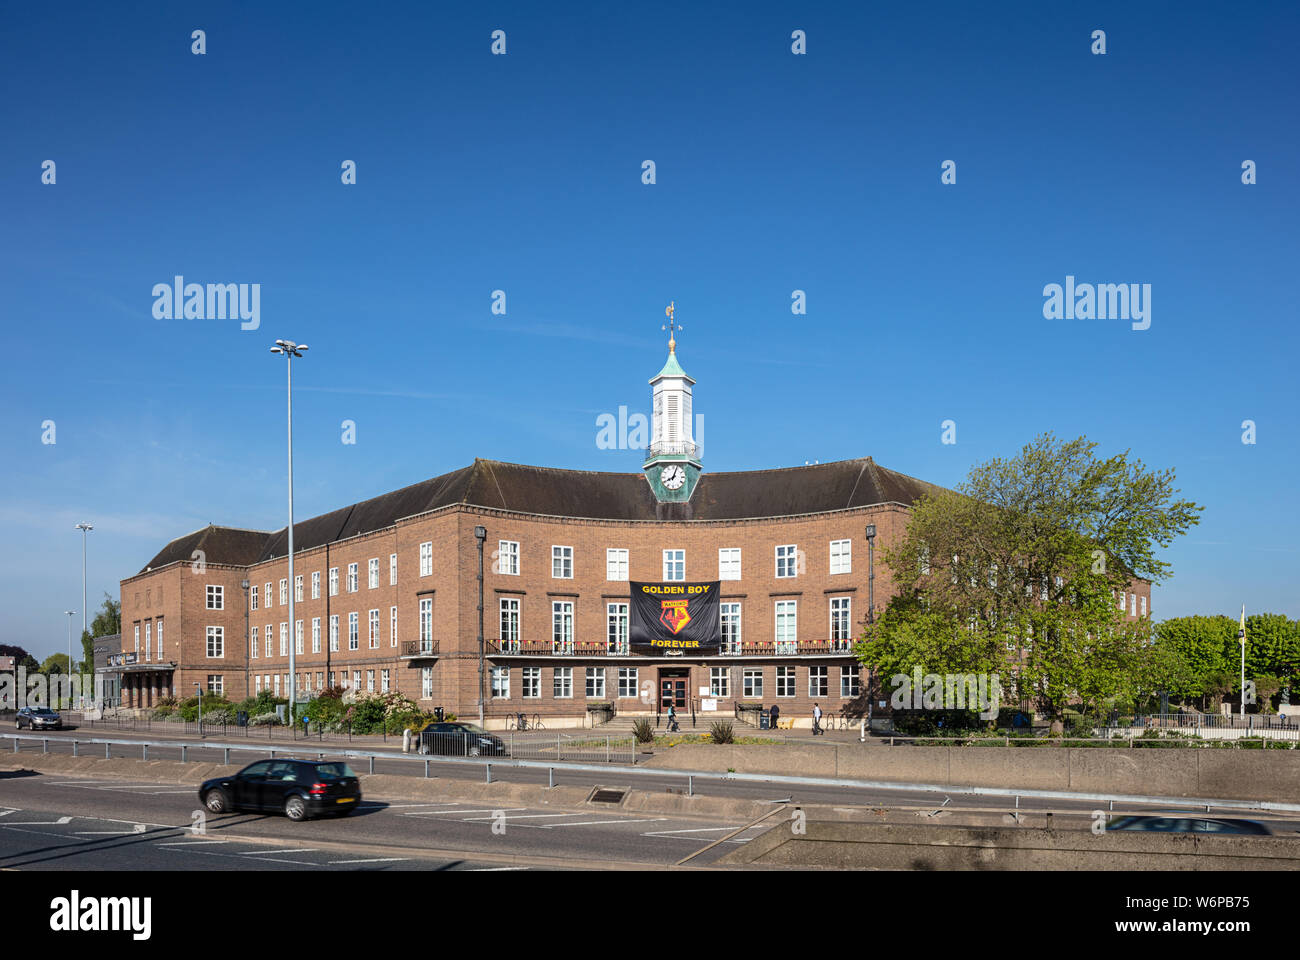 Watford Town Hall in Hertfordshire, UK Stock Photo